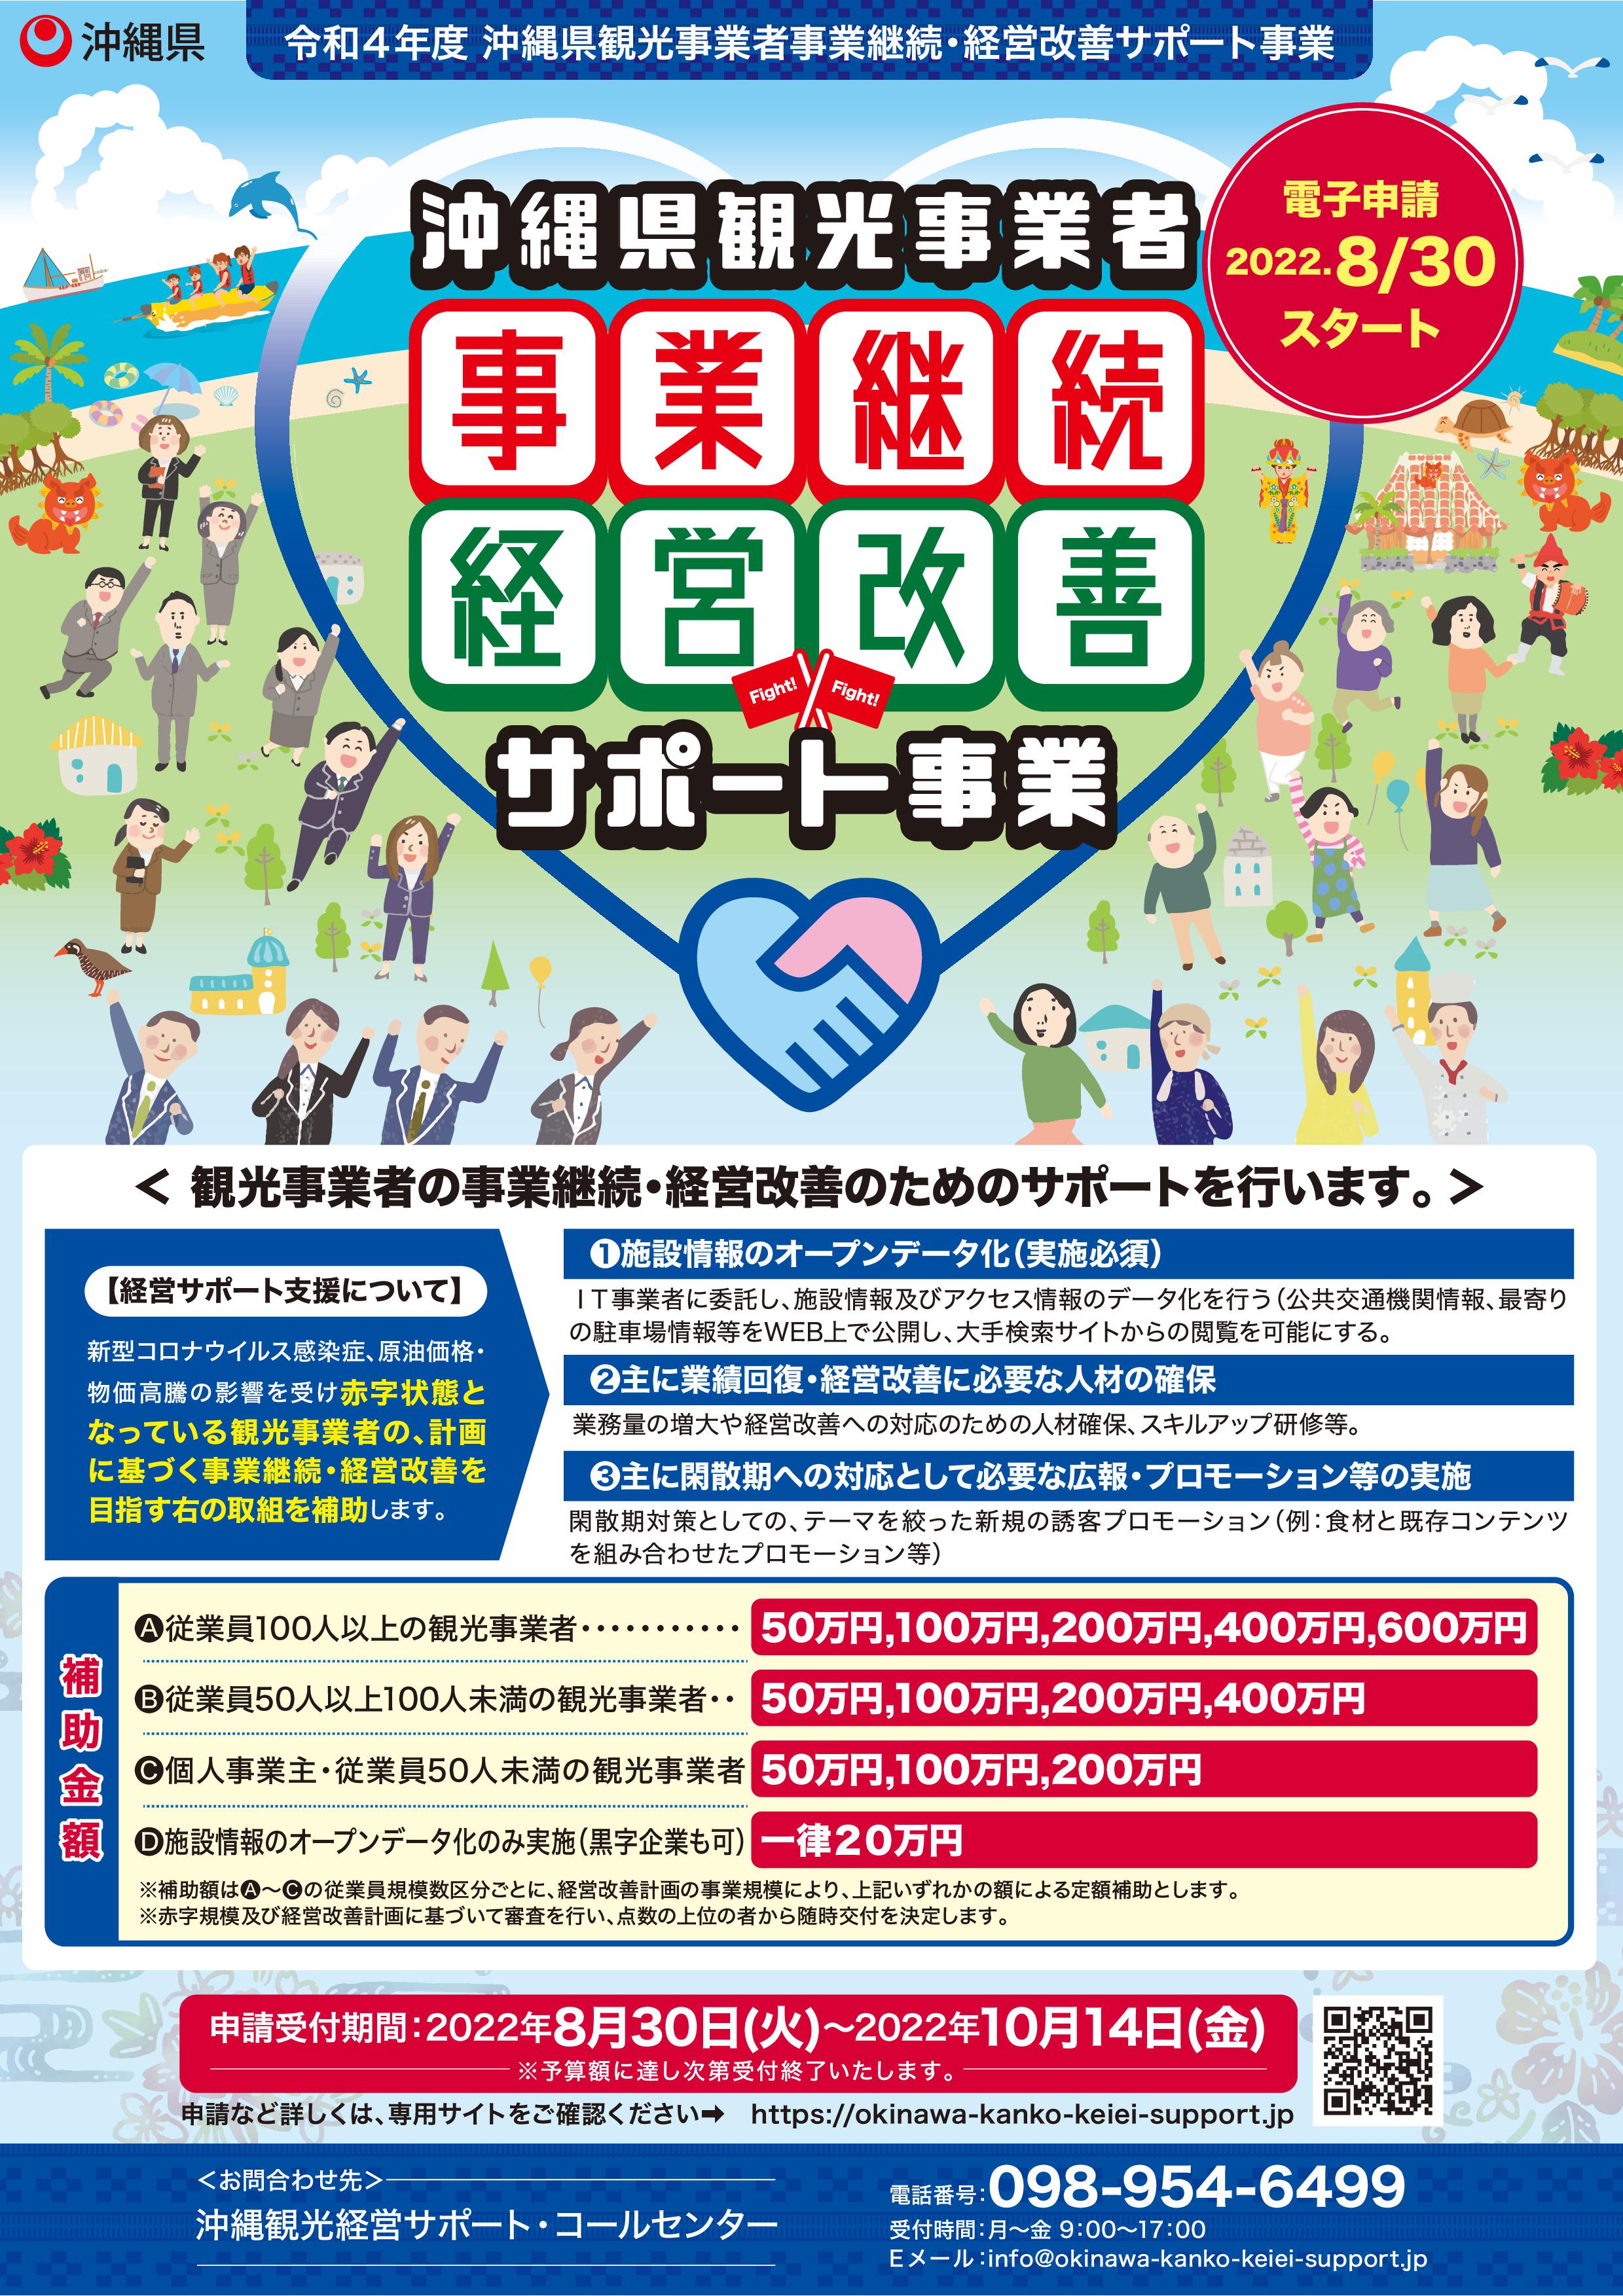 【情報提供】令和4年度沖縄県観光事業者事業継続・経営改善サポート事業について